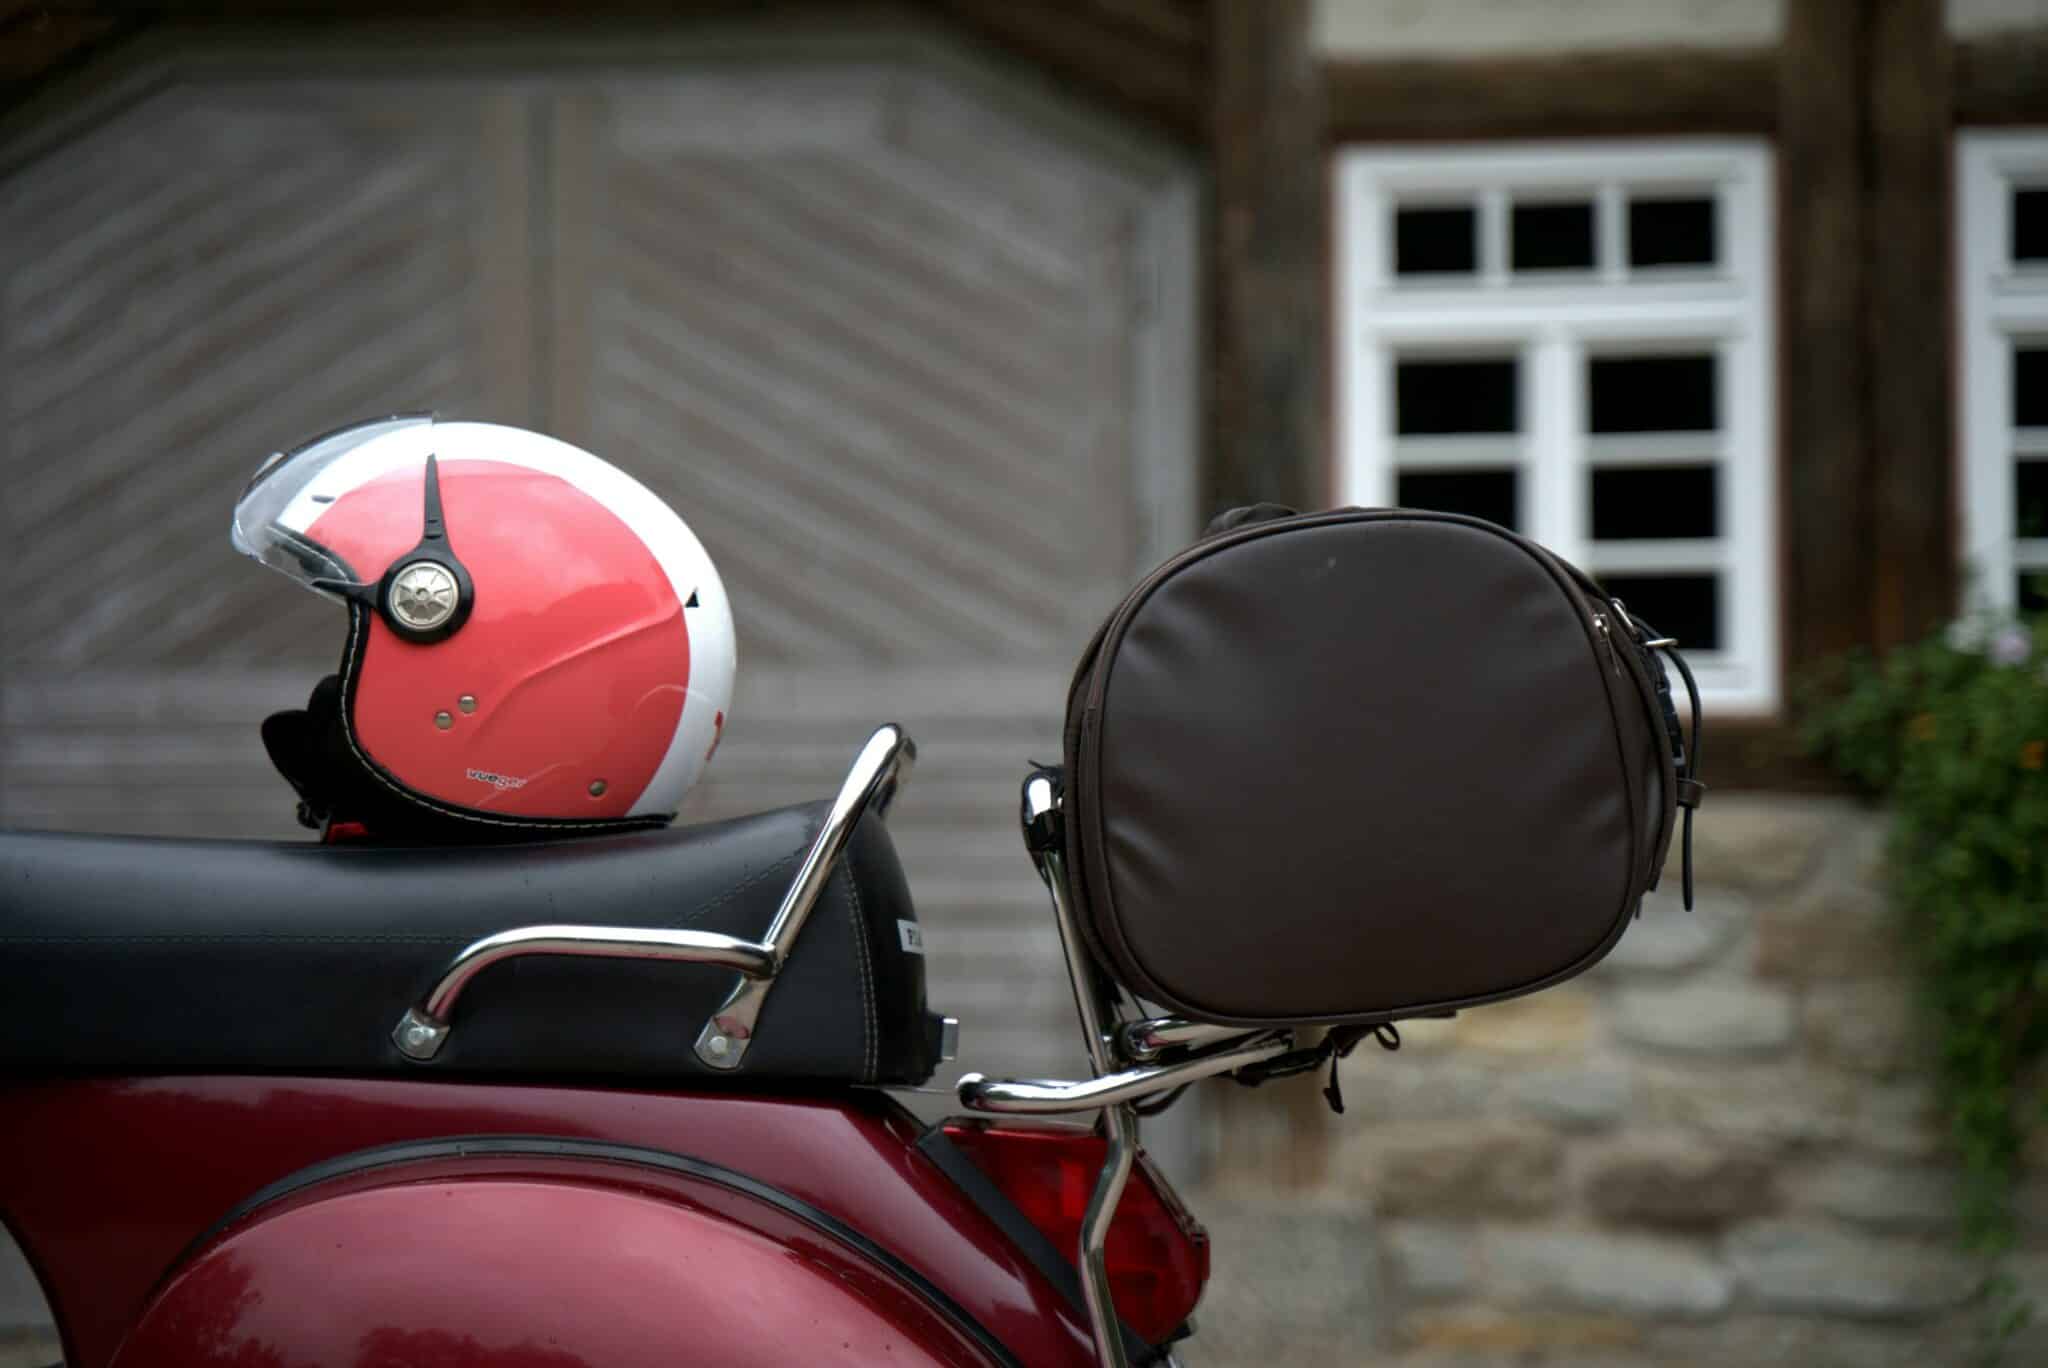 découvrez notre sélection de casques de moto vintage, alliant style rétro et sécurité, pour un look unique sur la route.